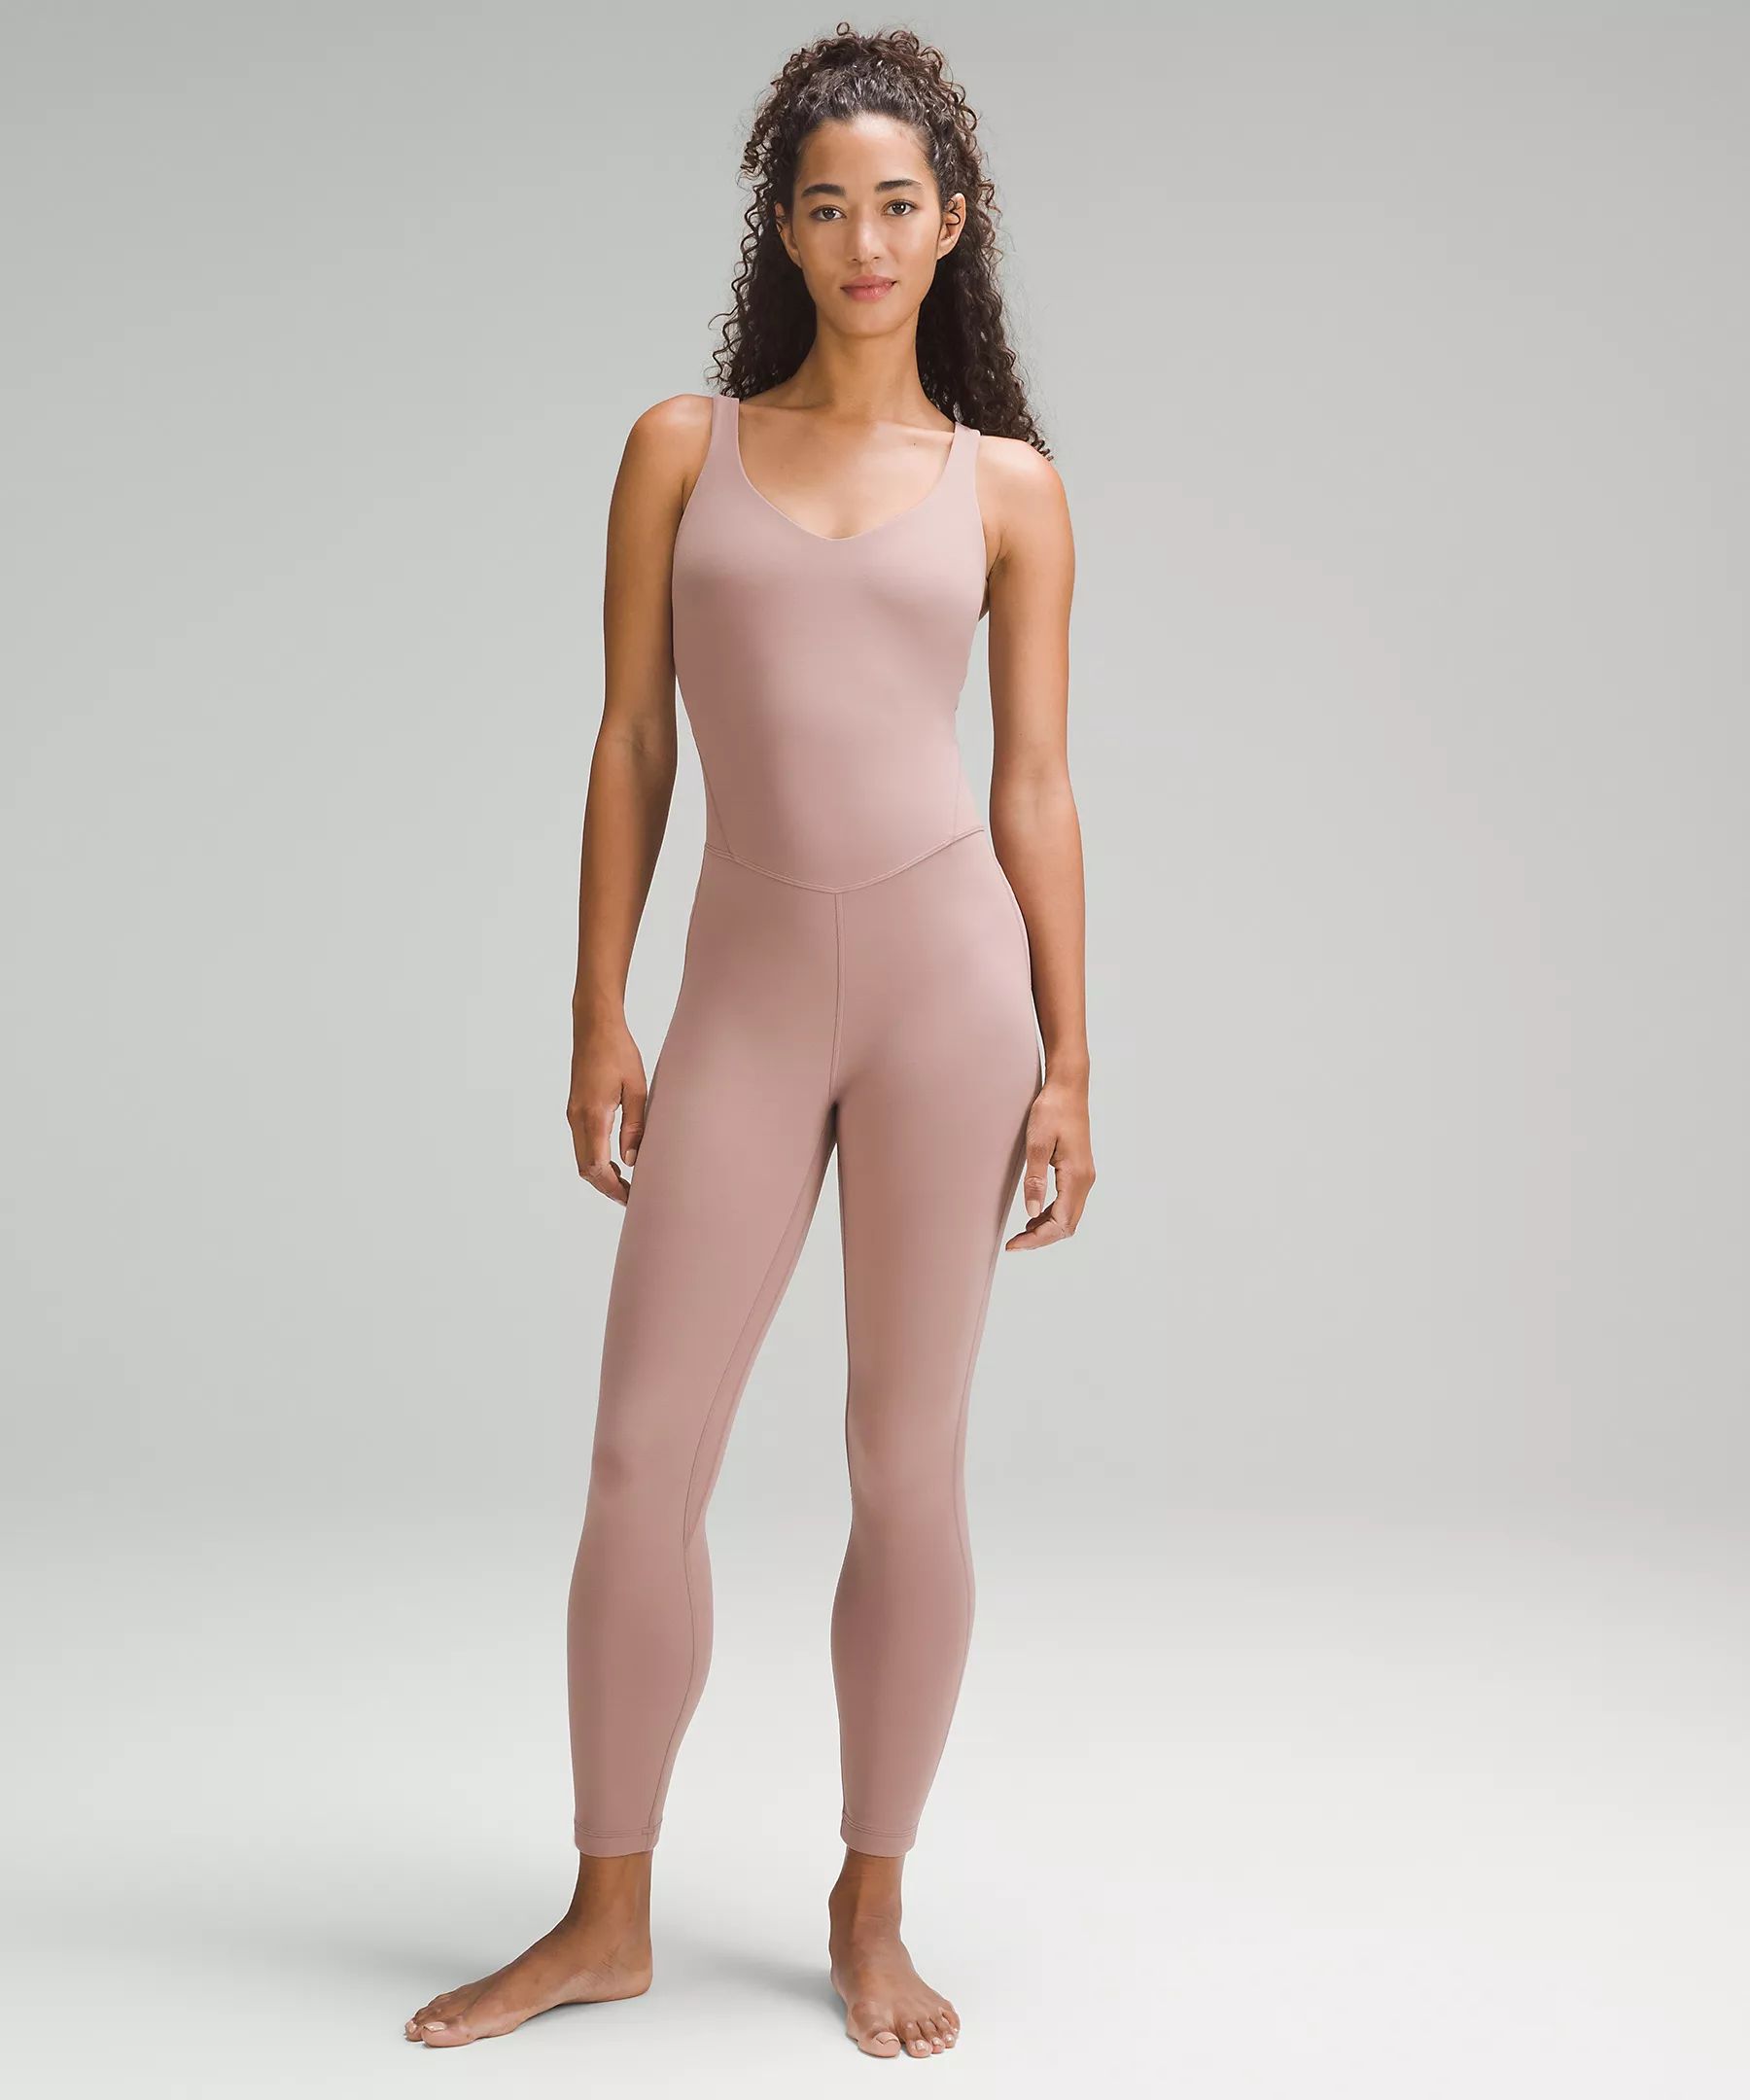 lululemon Align™ Bodysuit 25" Online Only | Lululemon (US)